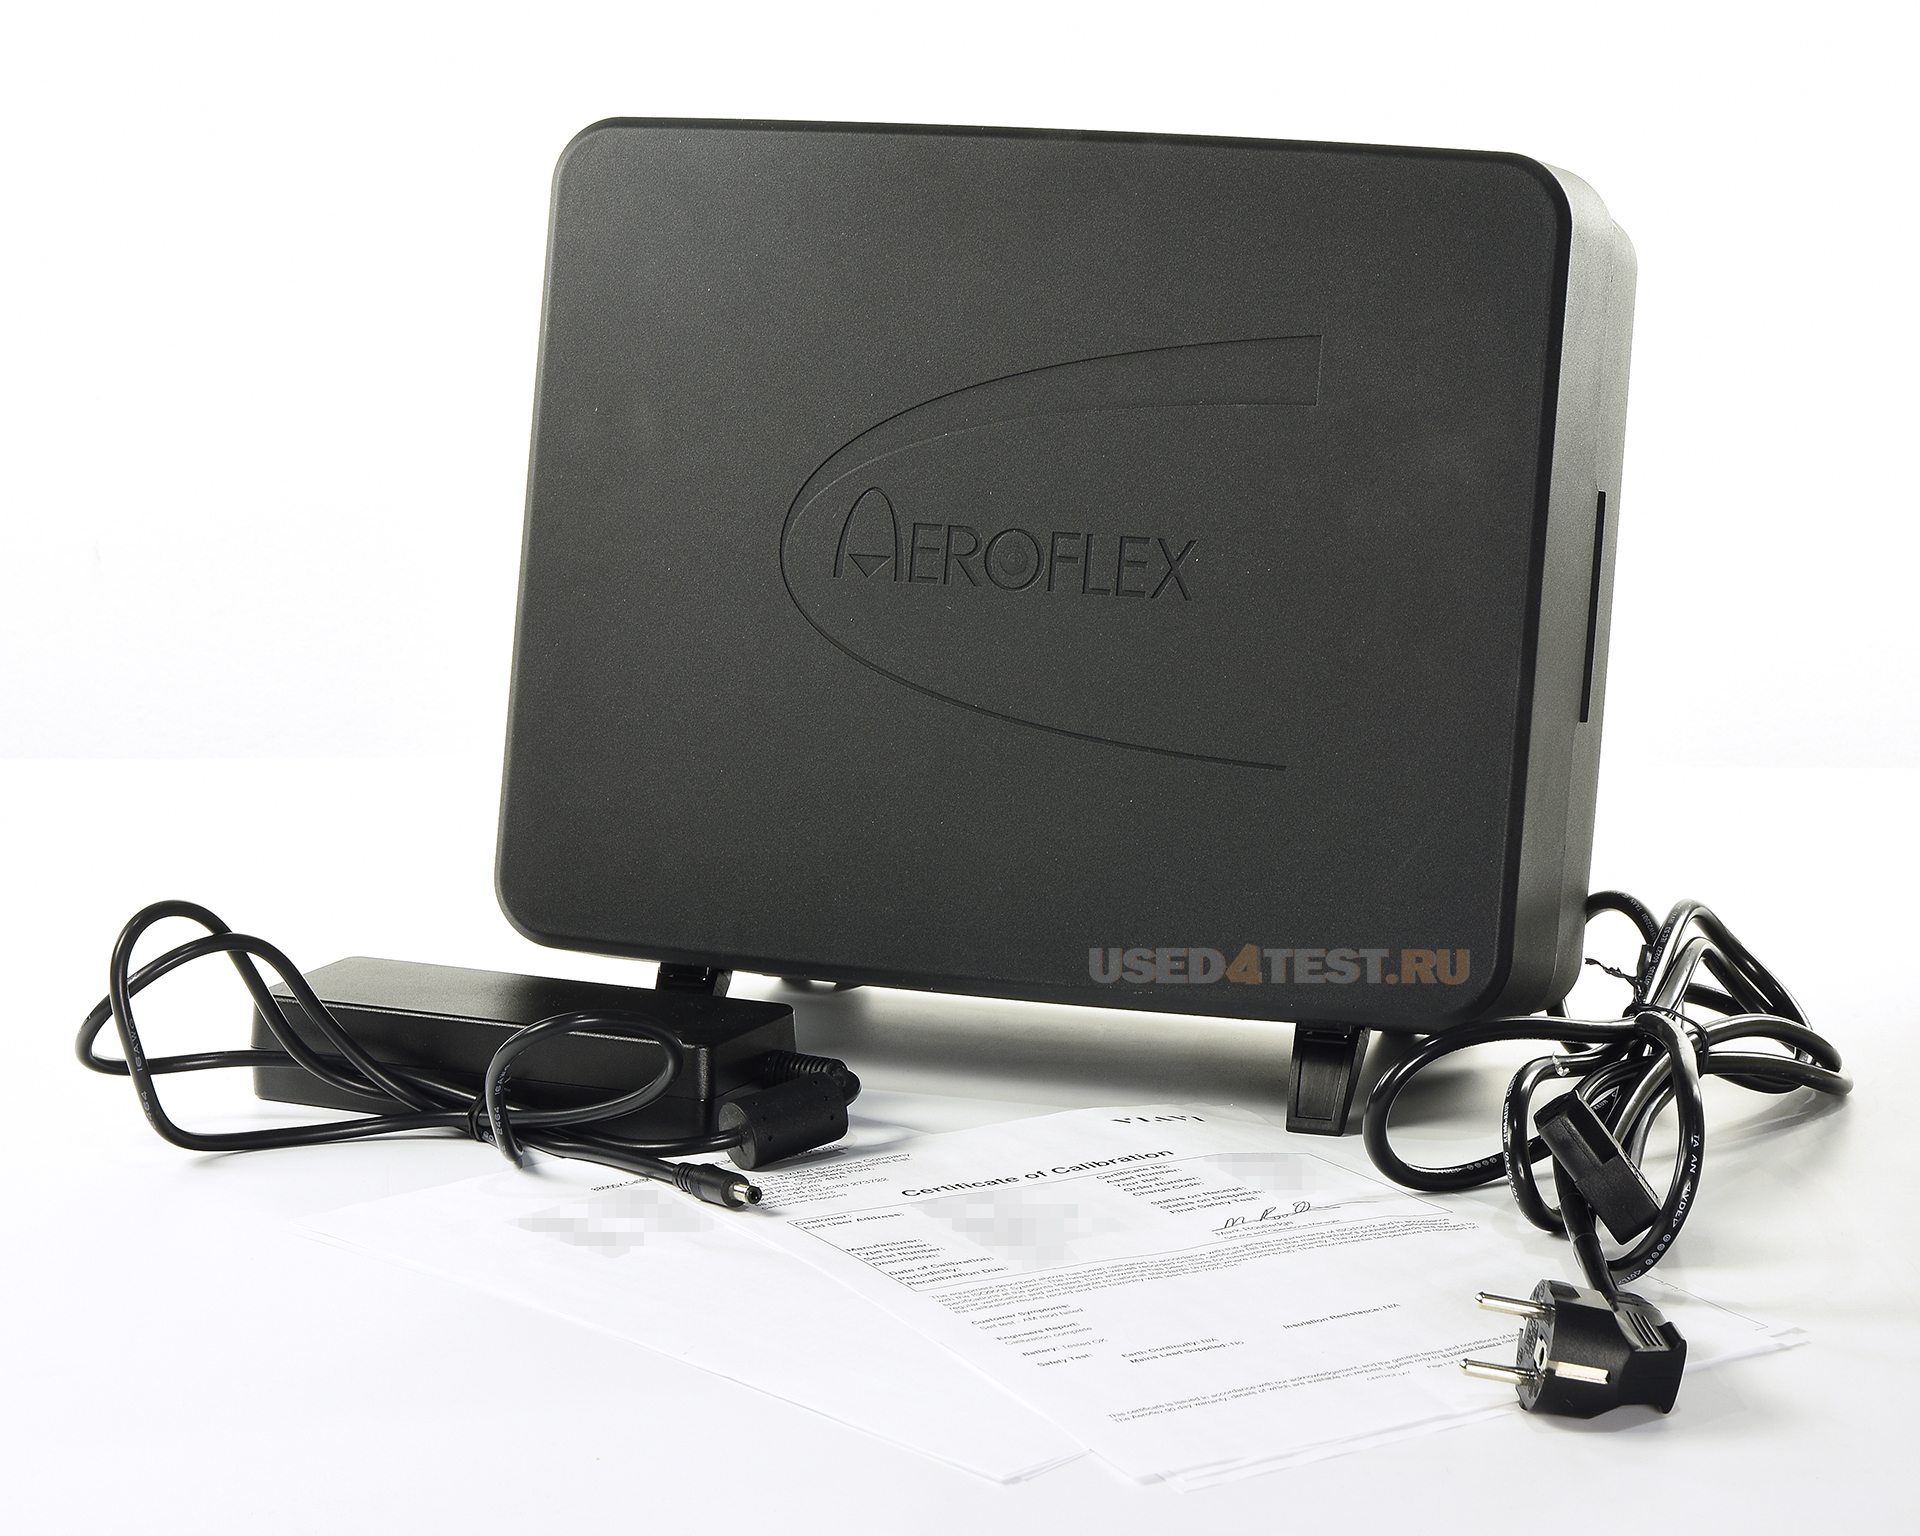 Цифровой радиотестер Aeroflex 8800SX 
 
 
 

 Стоимость указана в Рублях DDP Москва по безналичному расчету без НДС
